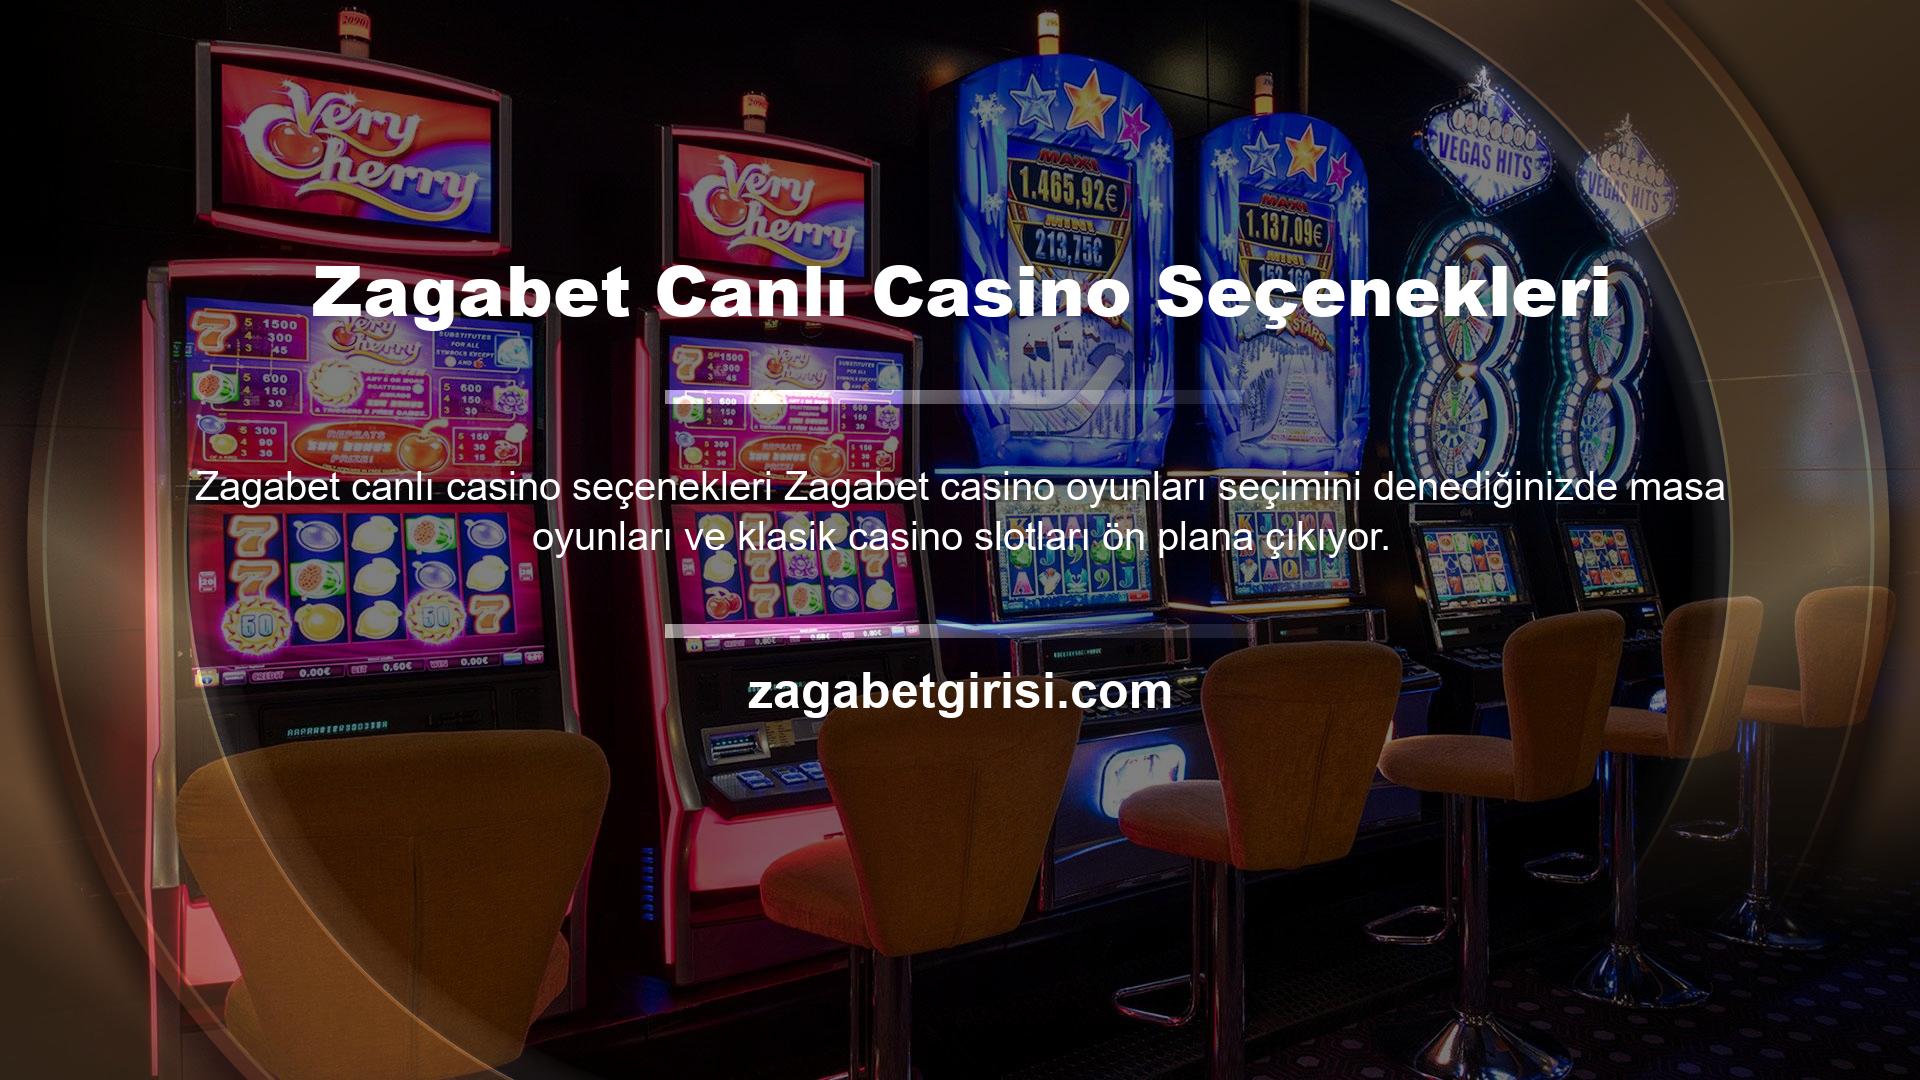 Genellikle canlı casinolarda sunulan tüm ünlü oyunlar, Canlı Krupiye Teklifleri ile 7/24 krupiyelerin kullanımına sunulur